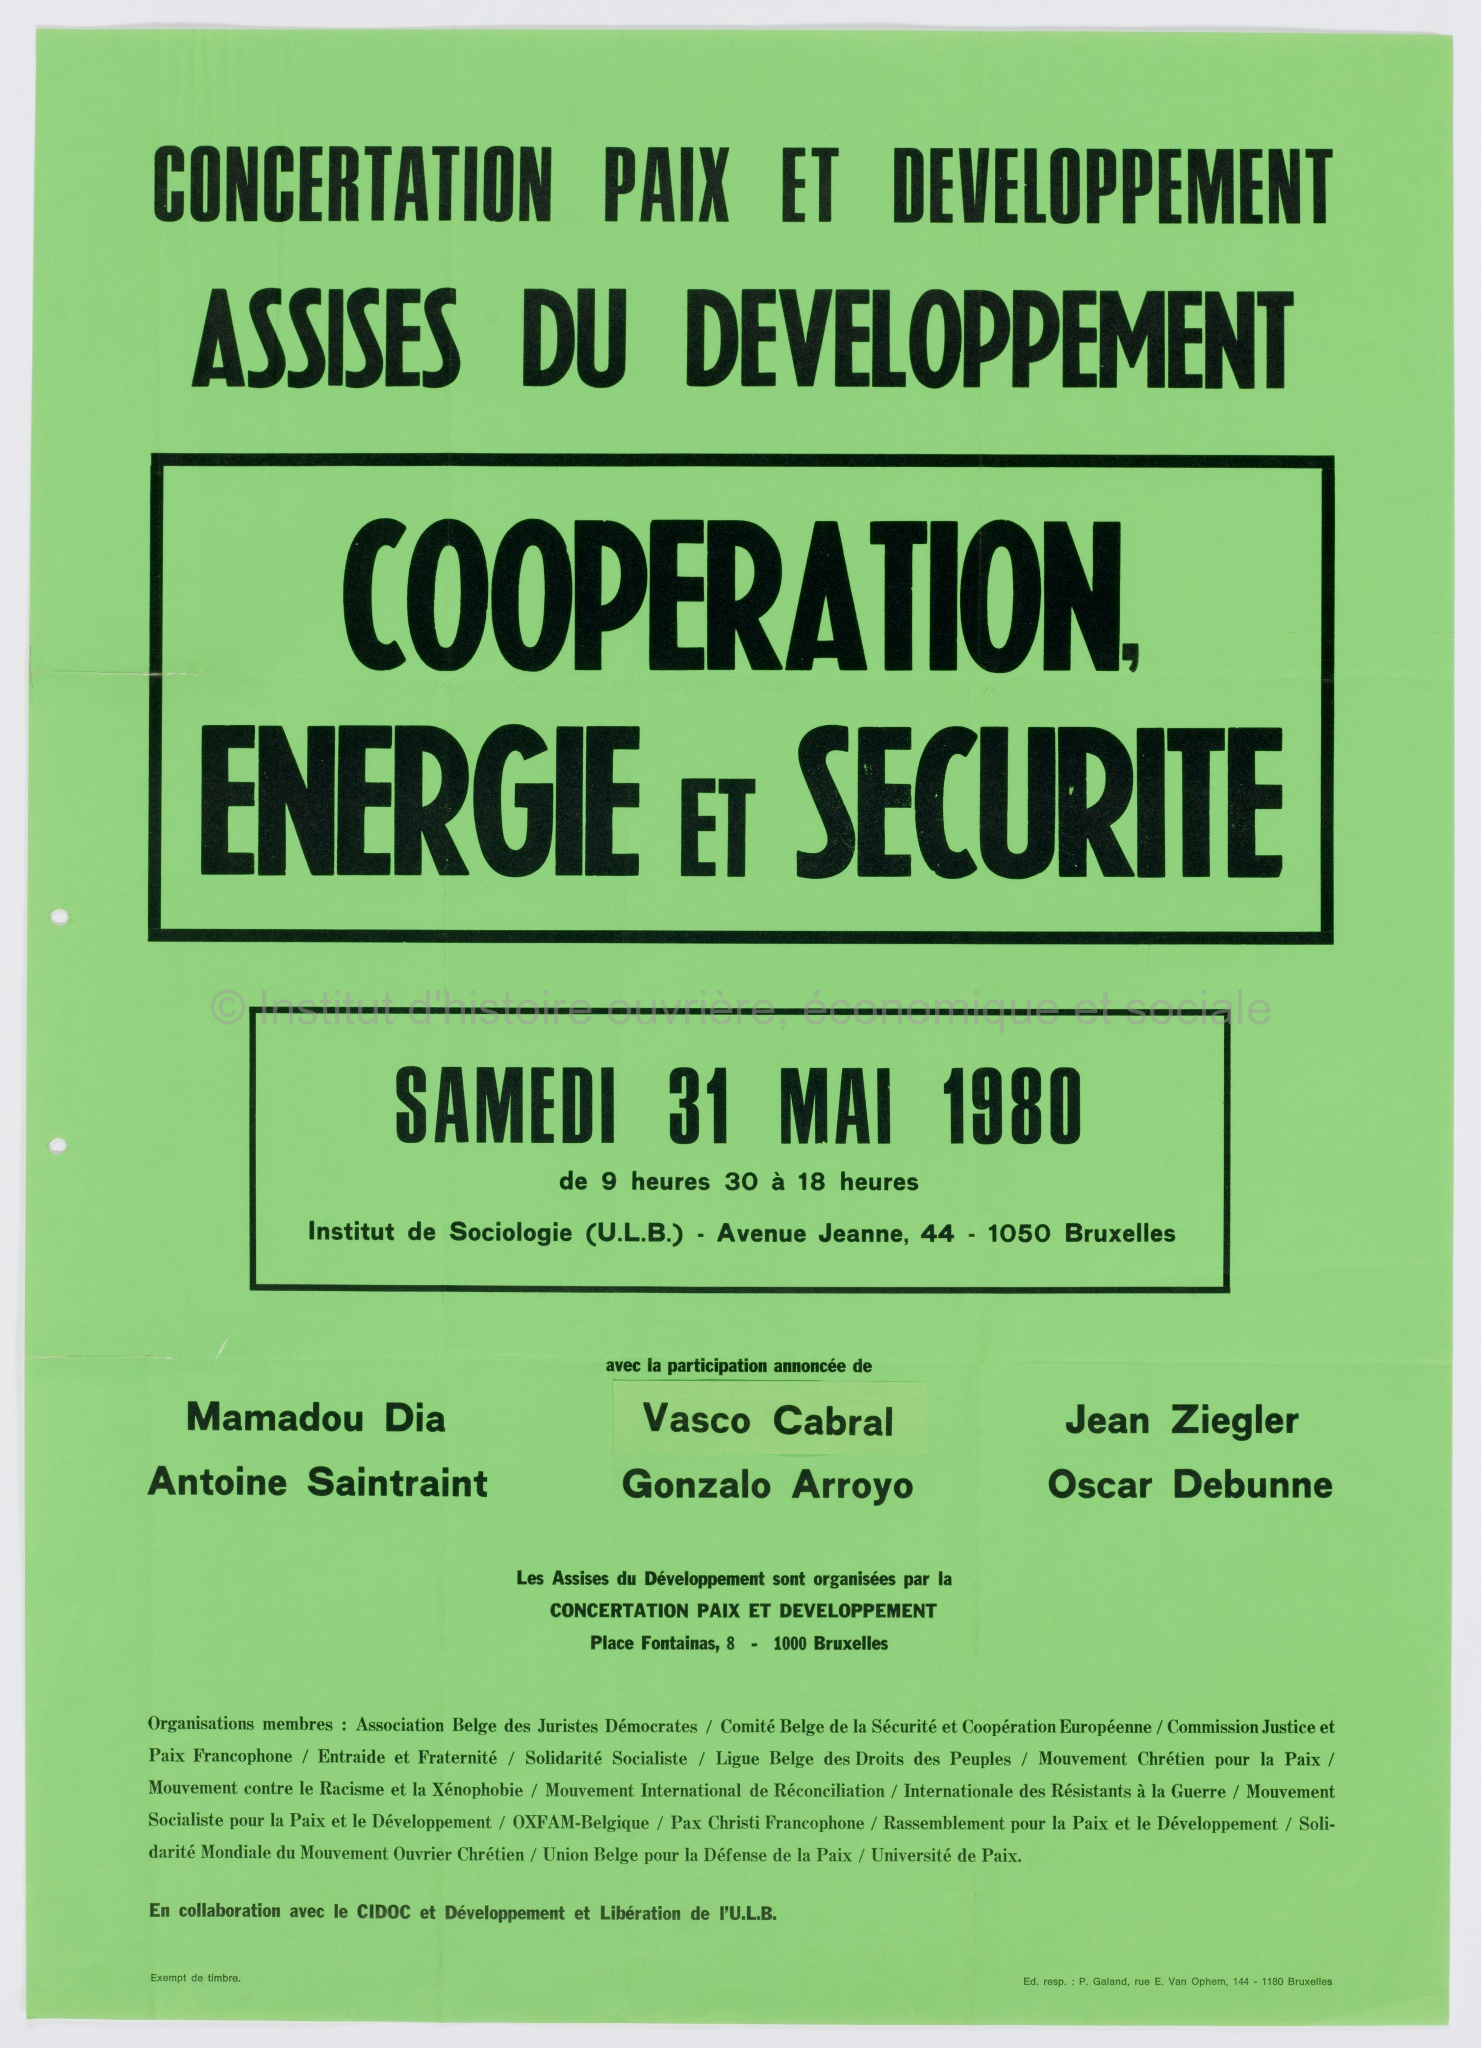 Concertation Paix et développement, Assises du développement : "Coopération, énergie et sécurité" : samedi 31 mai 1980